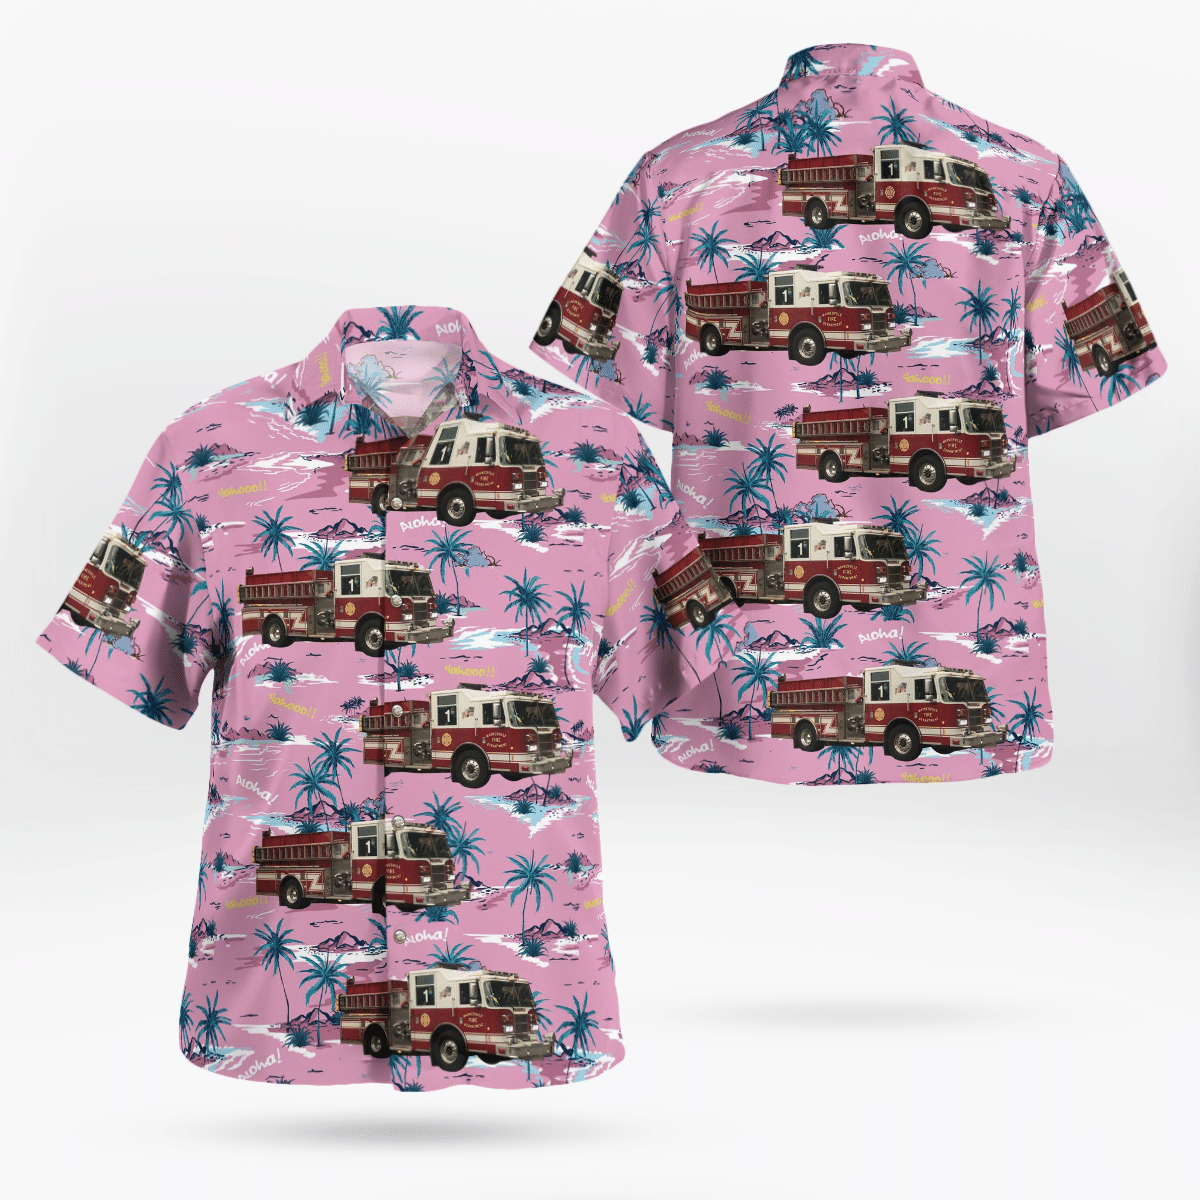 You won't regret buying these Aloha Shirt 199